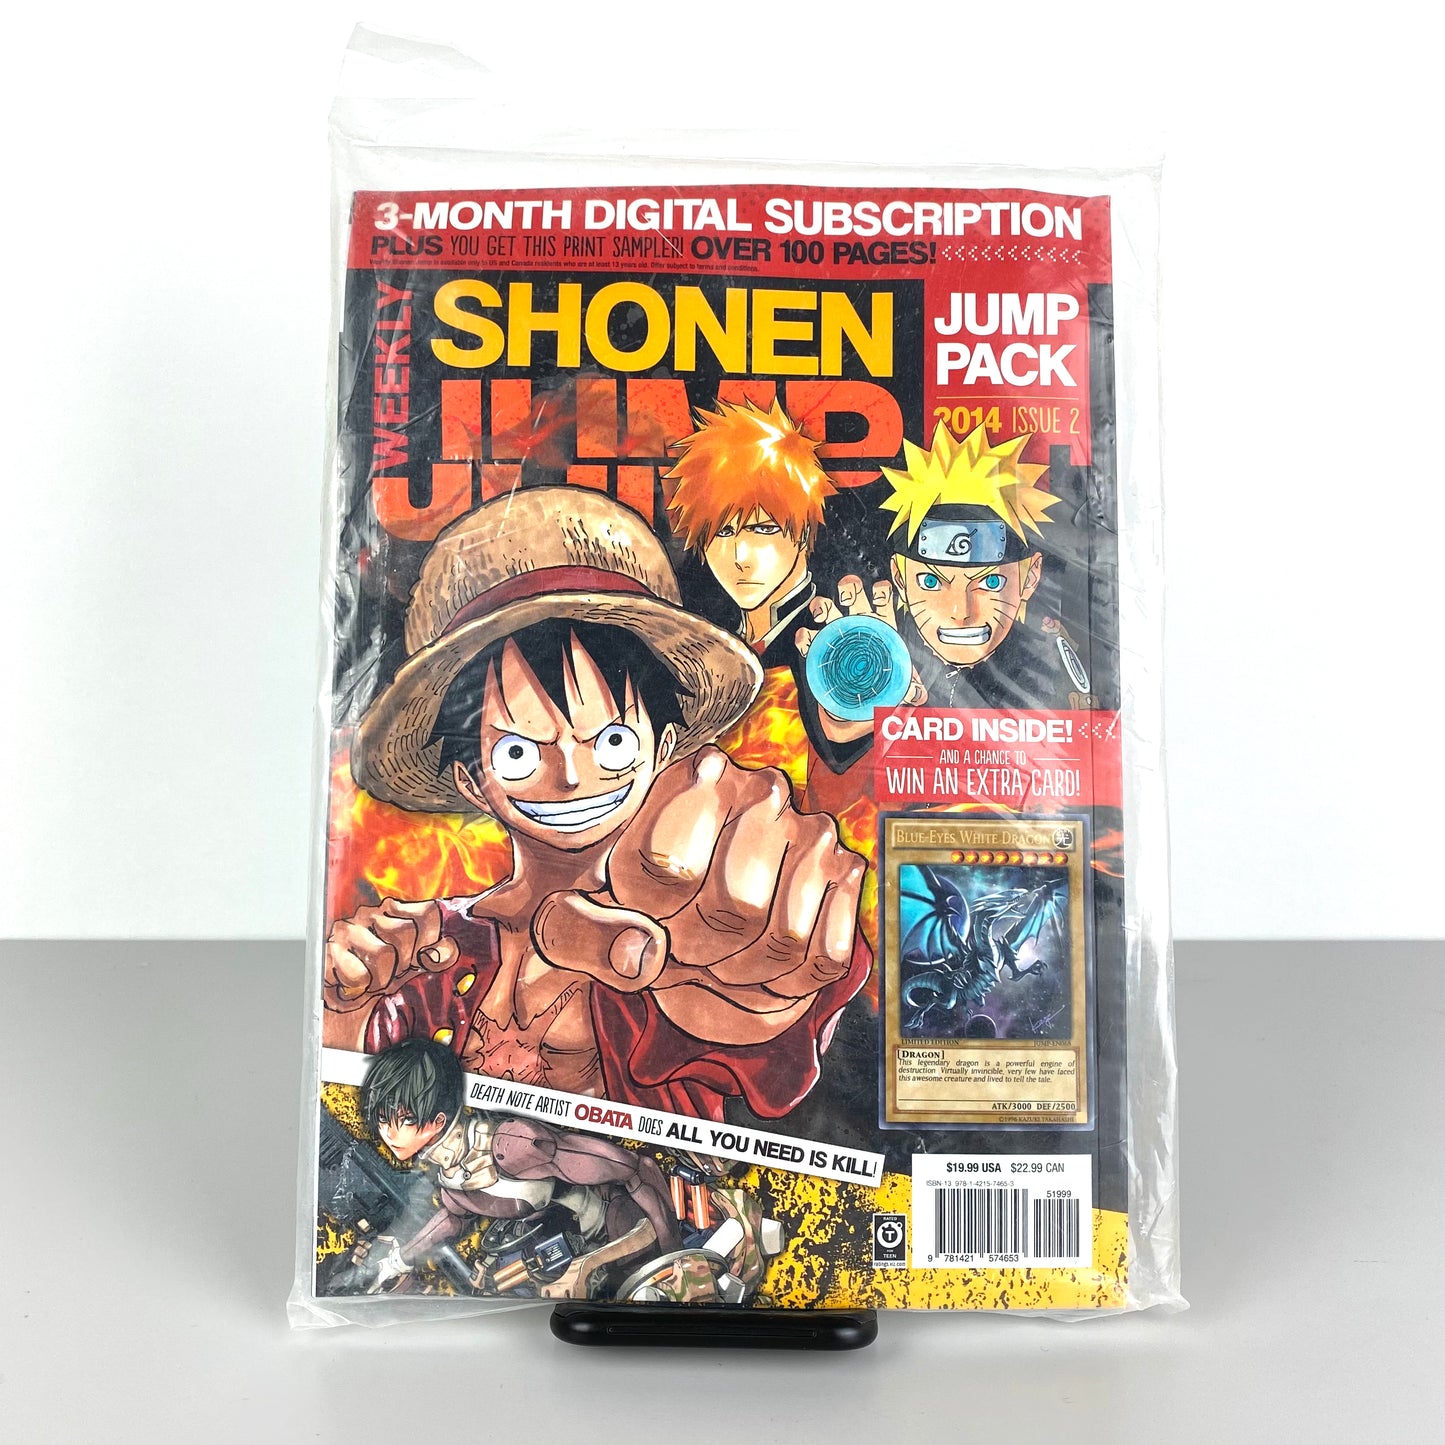 Shonen Jump 2014 Issue 2, includes JUMP-EN068